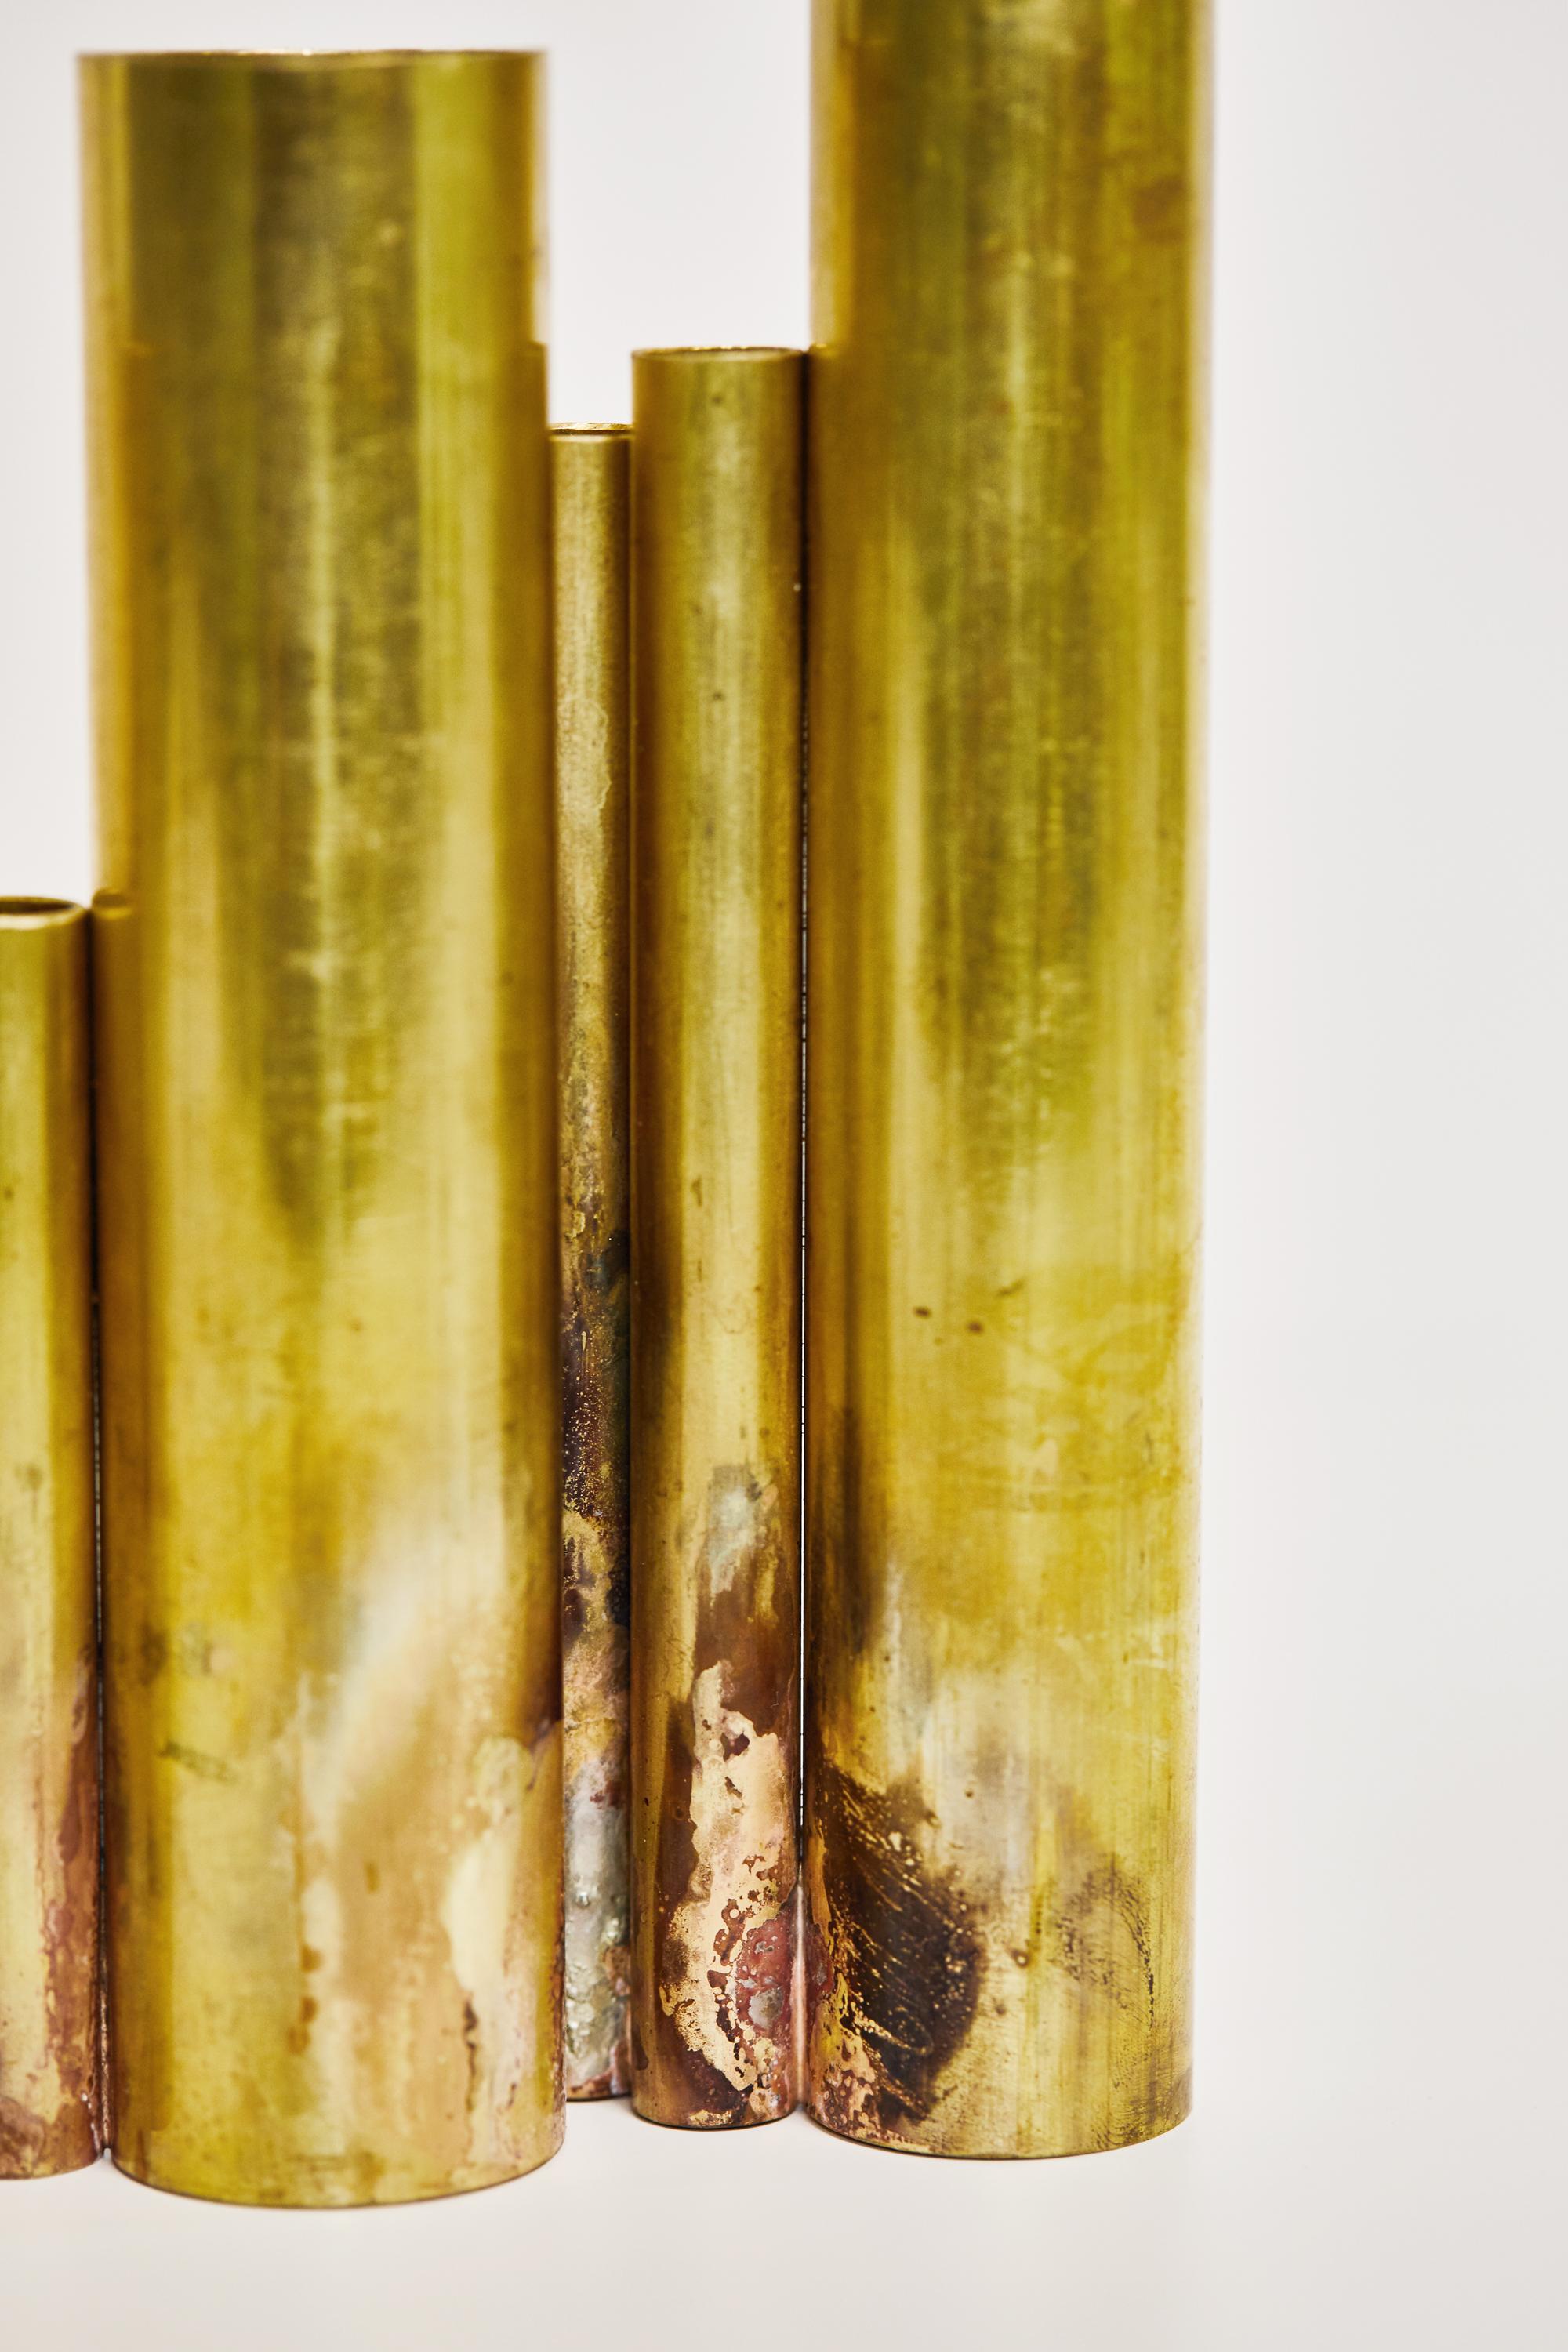 Soliflores Vase aus Messing, signiert von Pia Chevalier
Rohes Messing, Silberlote.
Abmessungen: ø 2,6 bis 3,8 x 14 cm H 19 bis 22 cm
Jede einzelne ist einzigartig

Pia Chevalier ist eine französische zeitgenössische Designerin.
Pia Chevalier ist